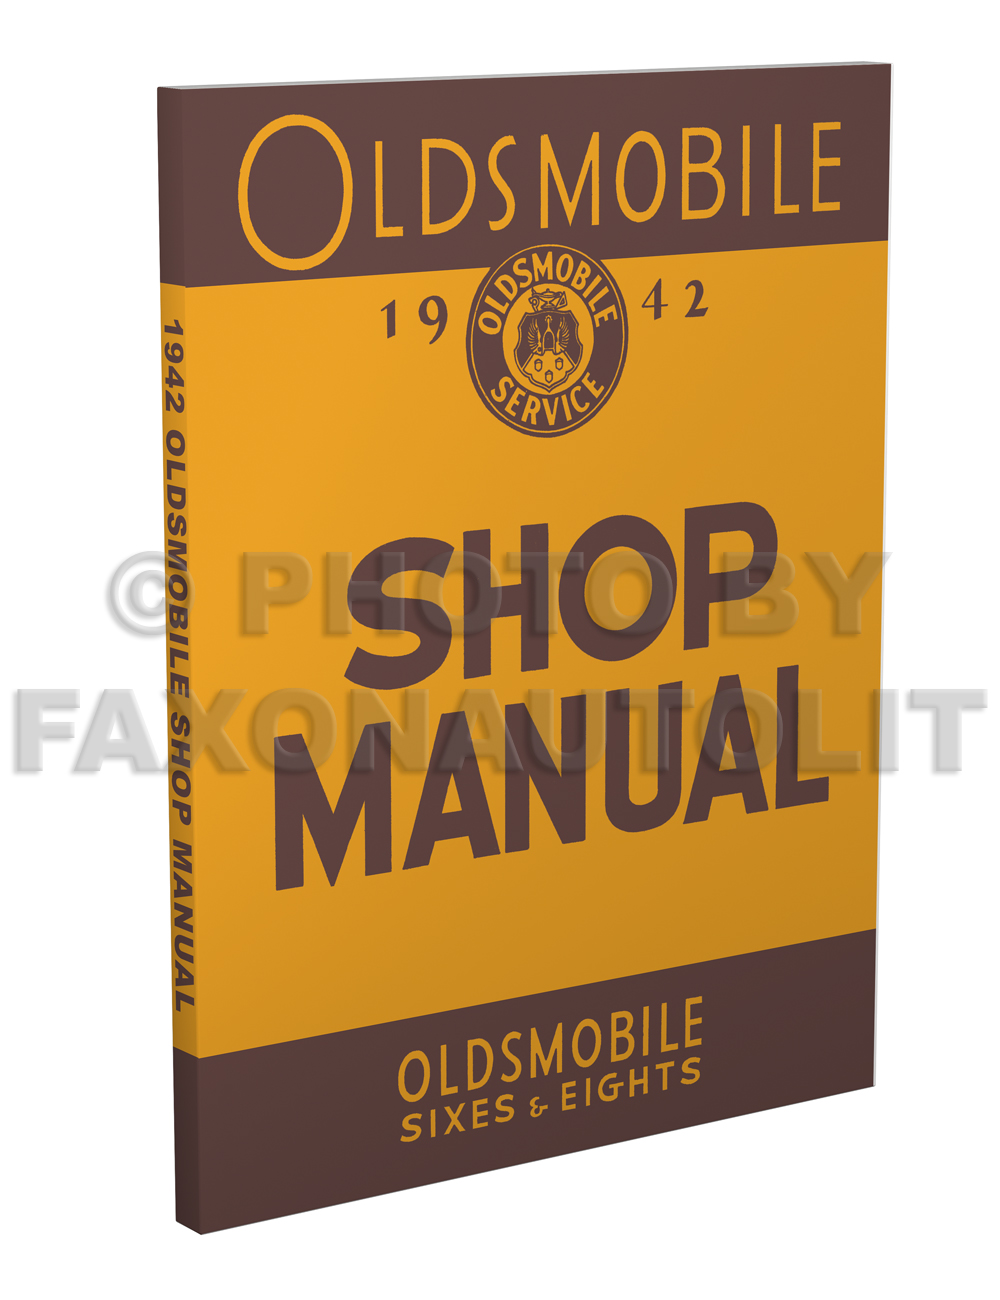 1942 Oldsmobile Repair Manual Original 8 1/2 x 11"